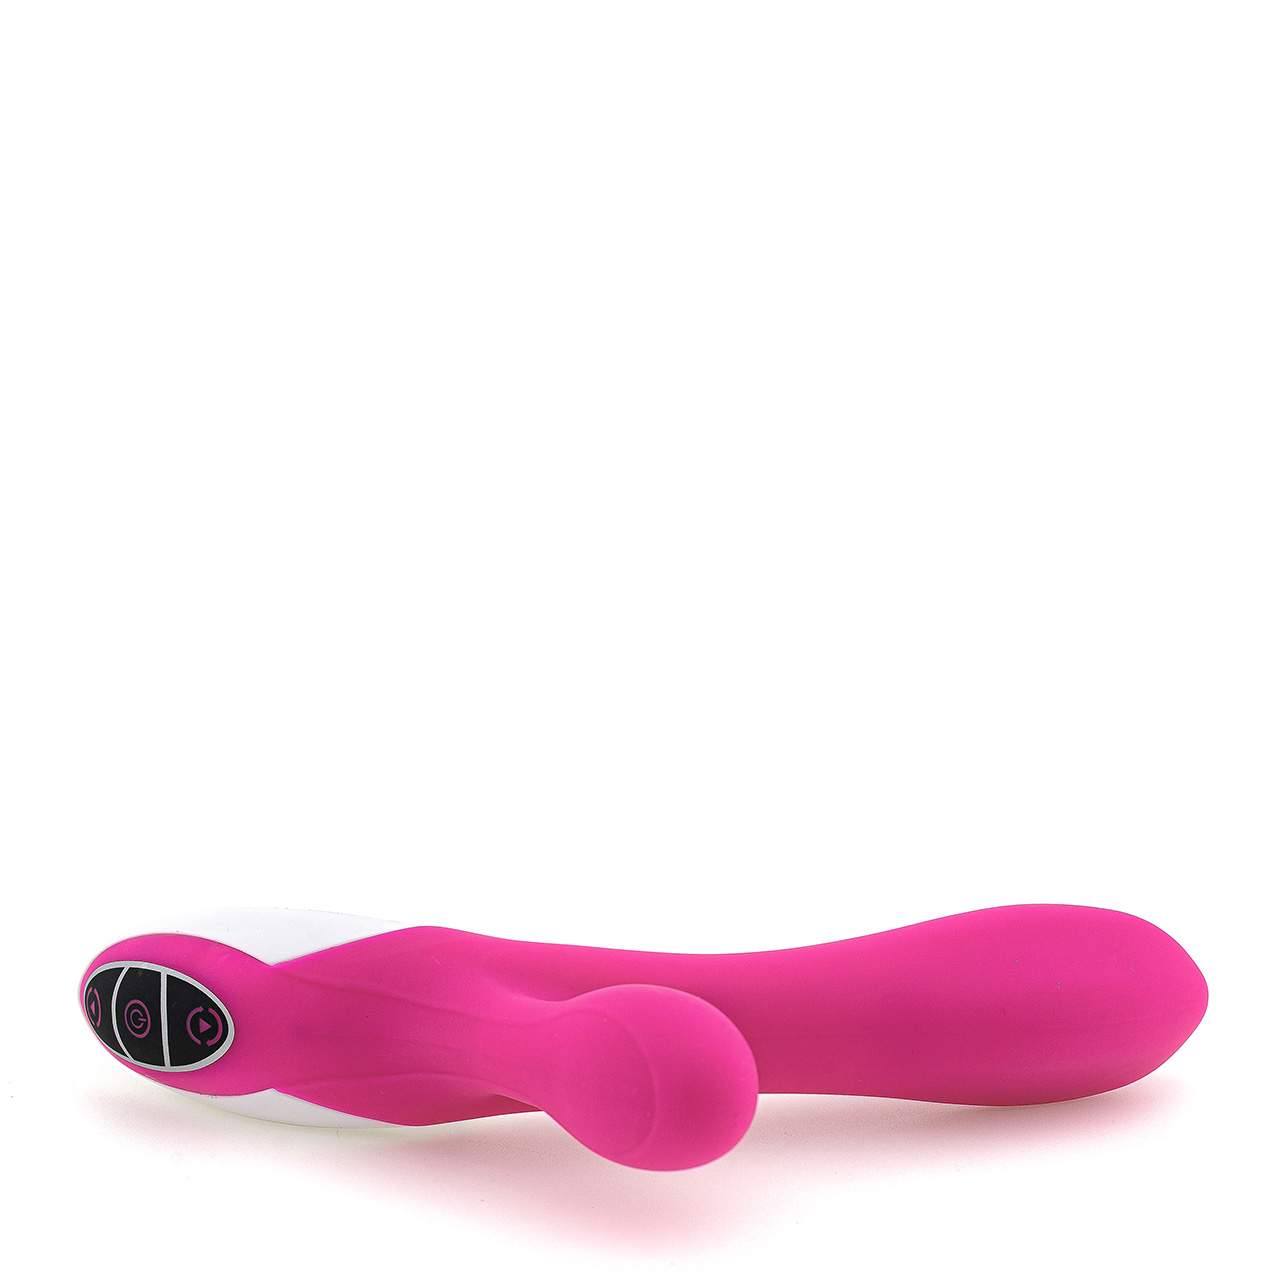 Wielofunkcyjny wibrator króliczek z silikonu w kolorze różowym